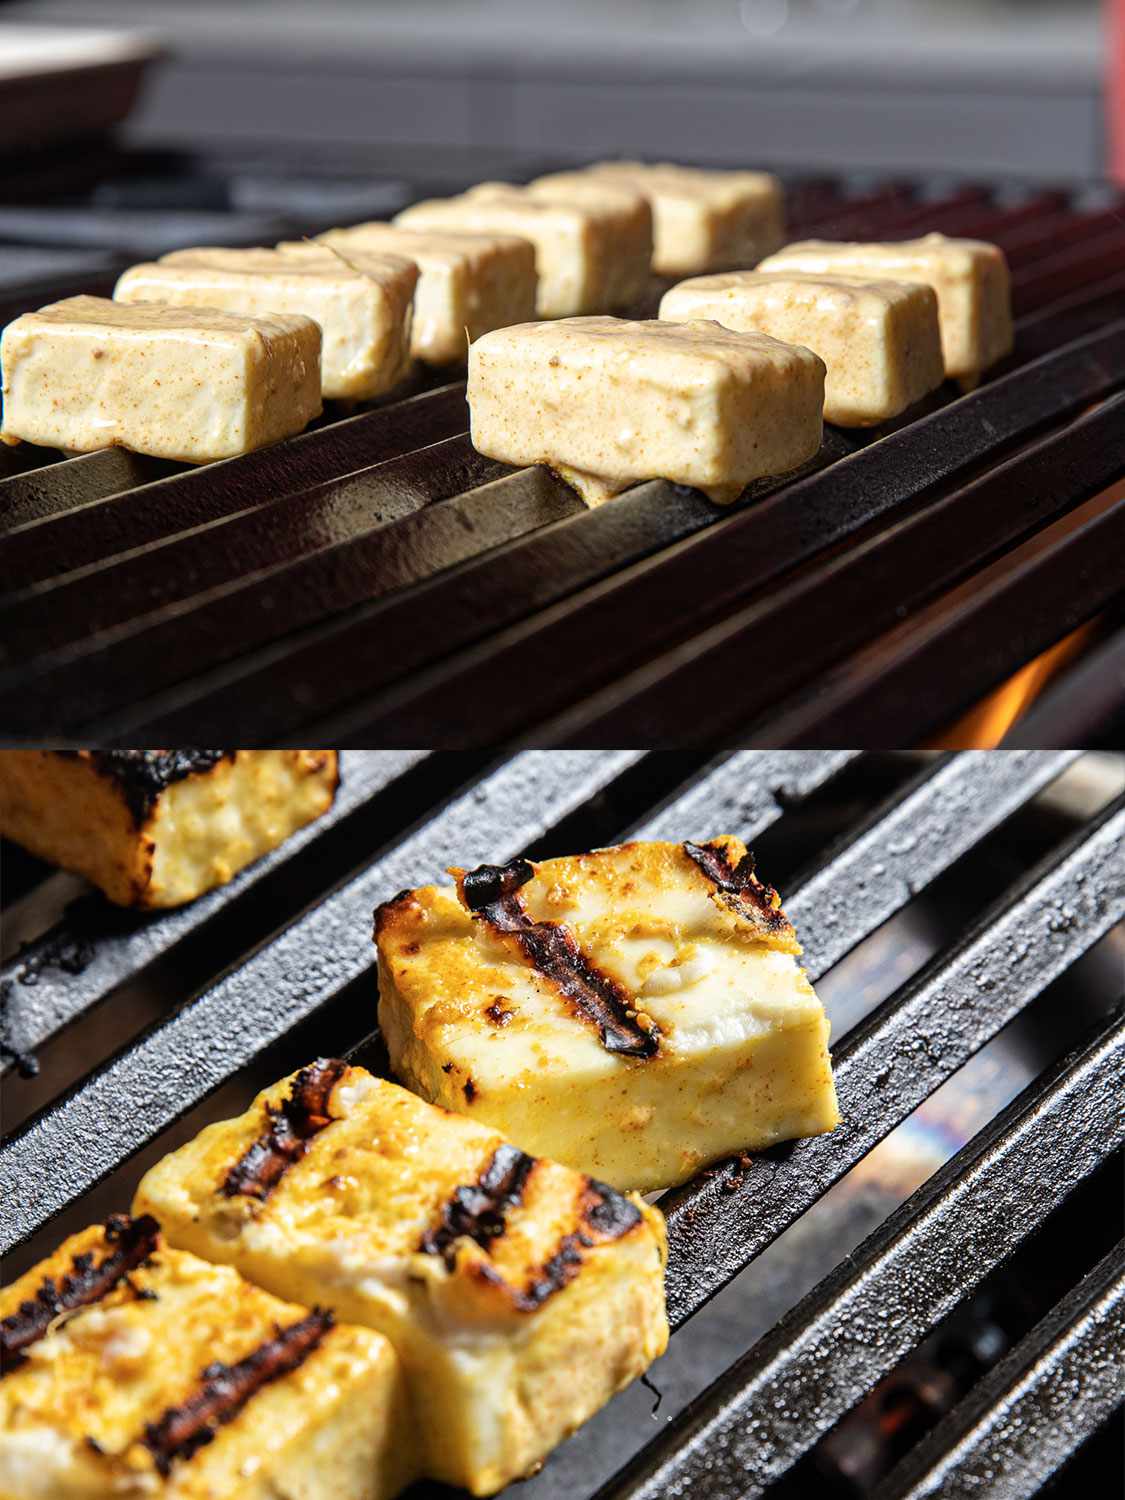 两个图像拼贴。上图:从侧面看，烤着的腌好的奶酪。下:烤架上烤的奶酪，露出烧烤的痕迹